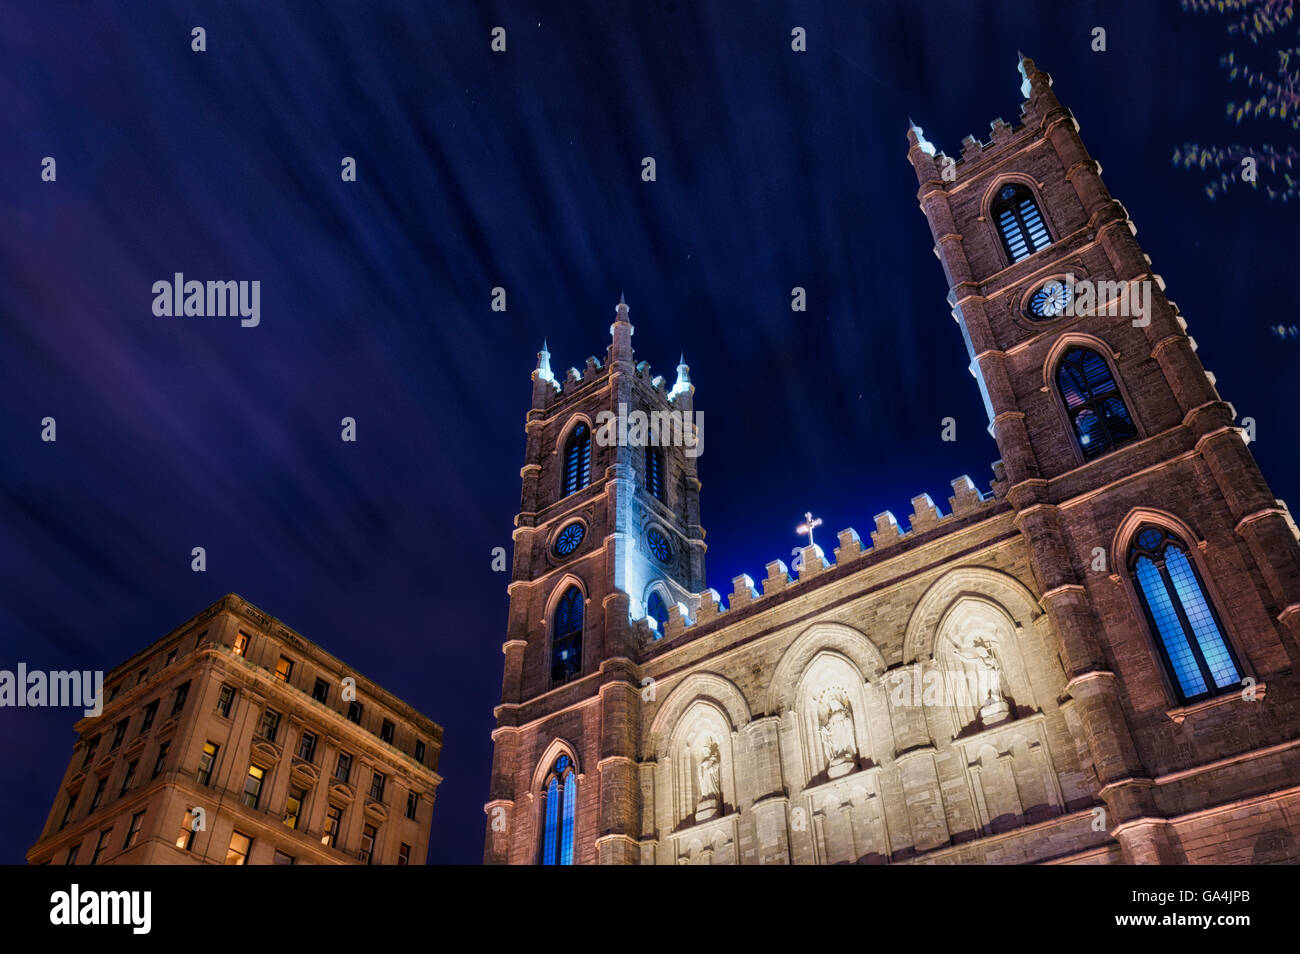 La Basilique de Notre Dame de Montréal Québec Canada, photo de nuit avec les nuages filant passé Banque D'Images